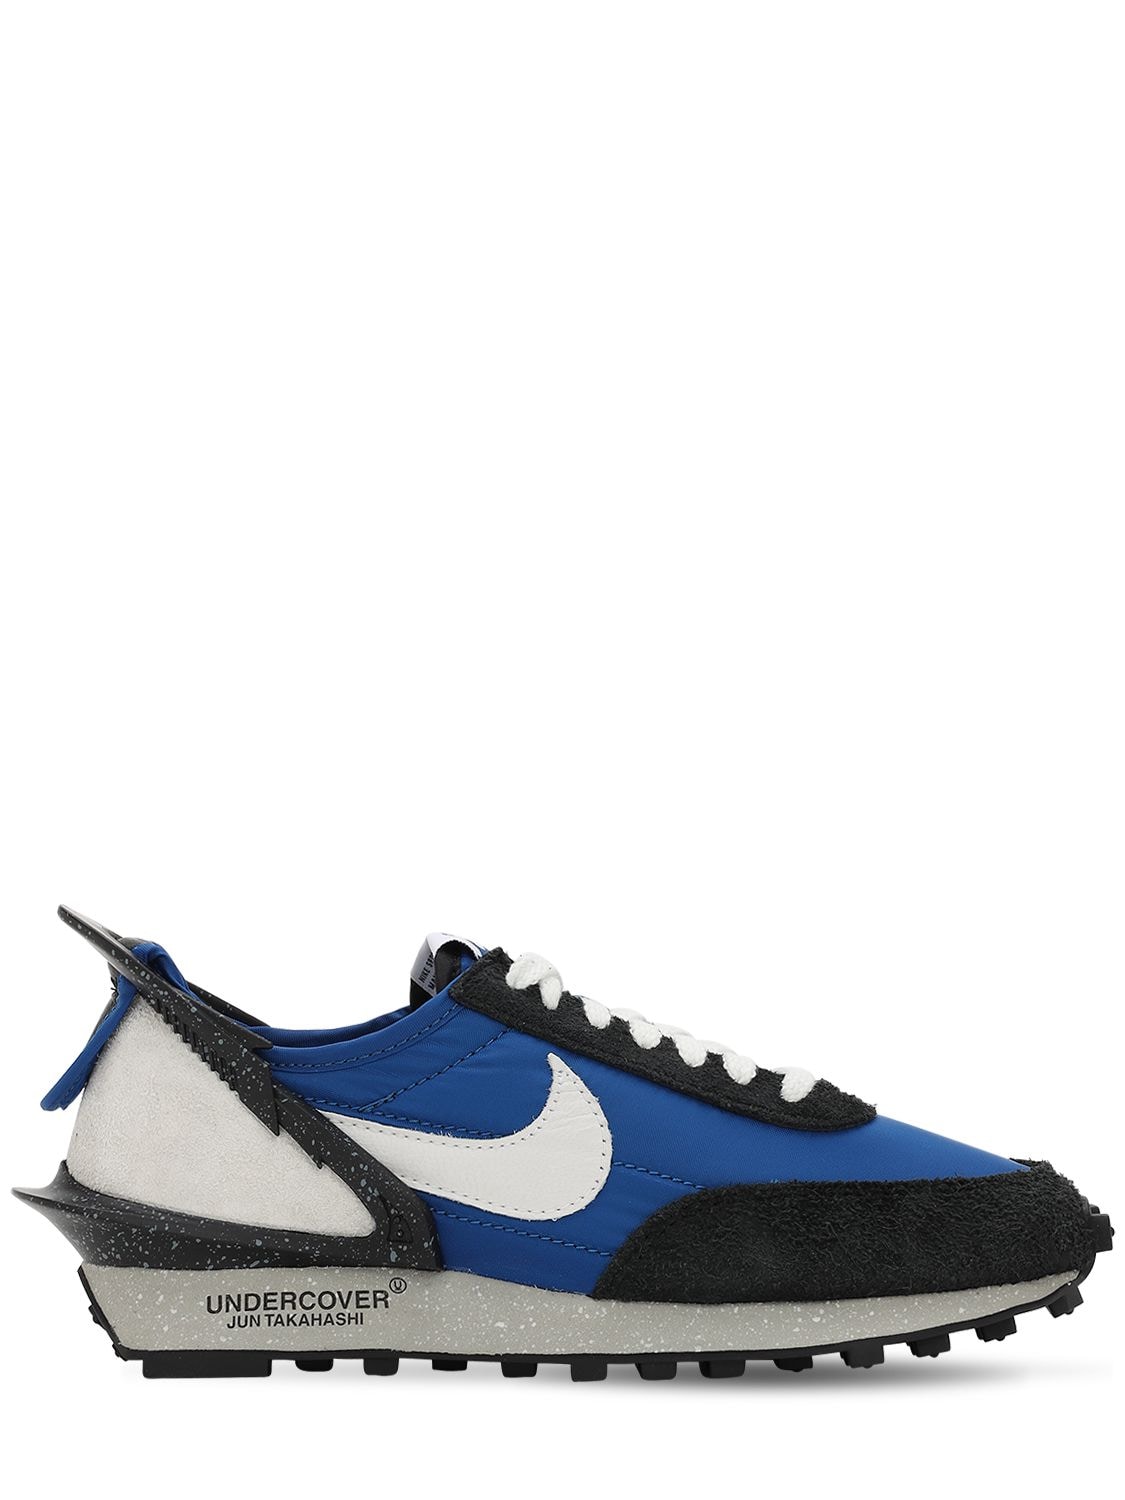 Nike Daybreak / Undercover Sneakers In Blue Jay